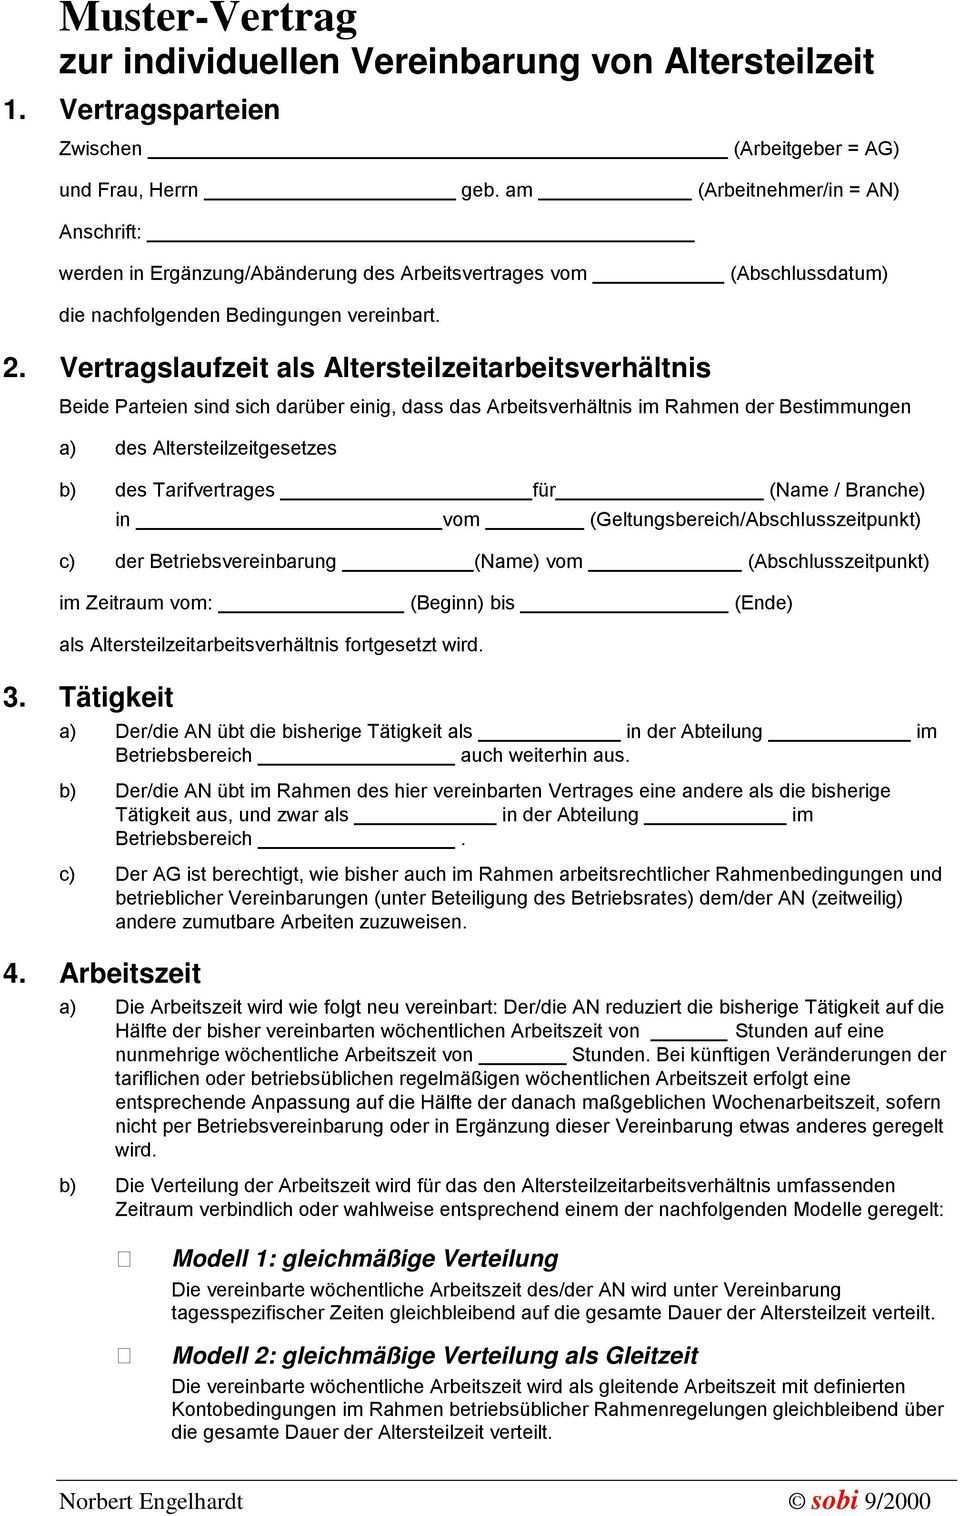 Muster Vertrag Zur Individuellen Vereinbarung Von Altersteilzeit Pdf Free Download